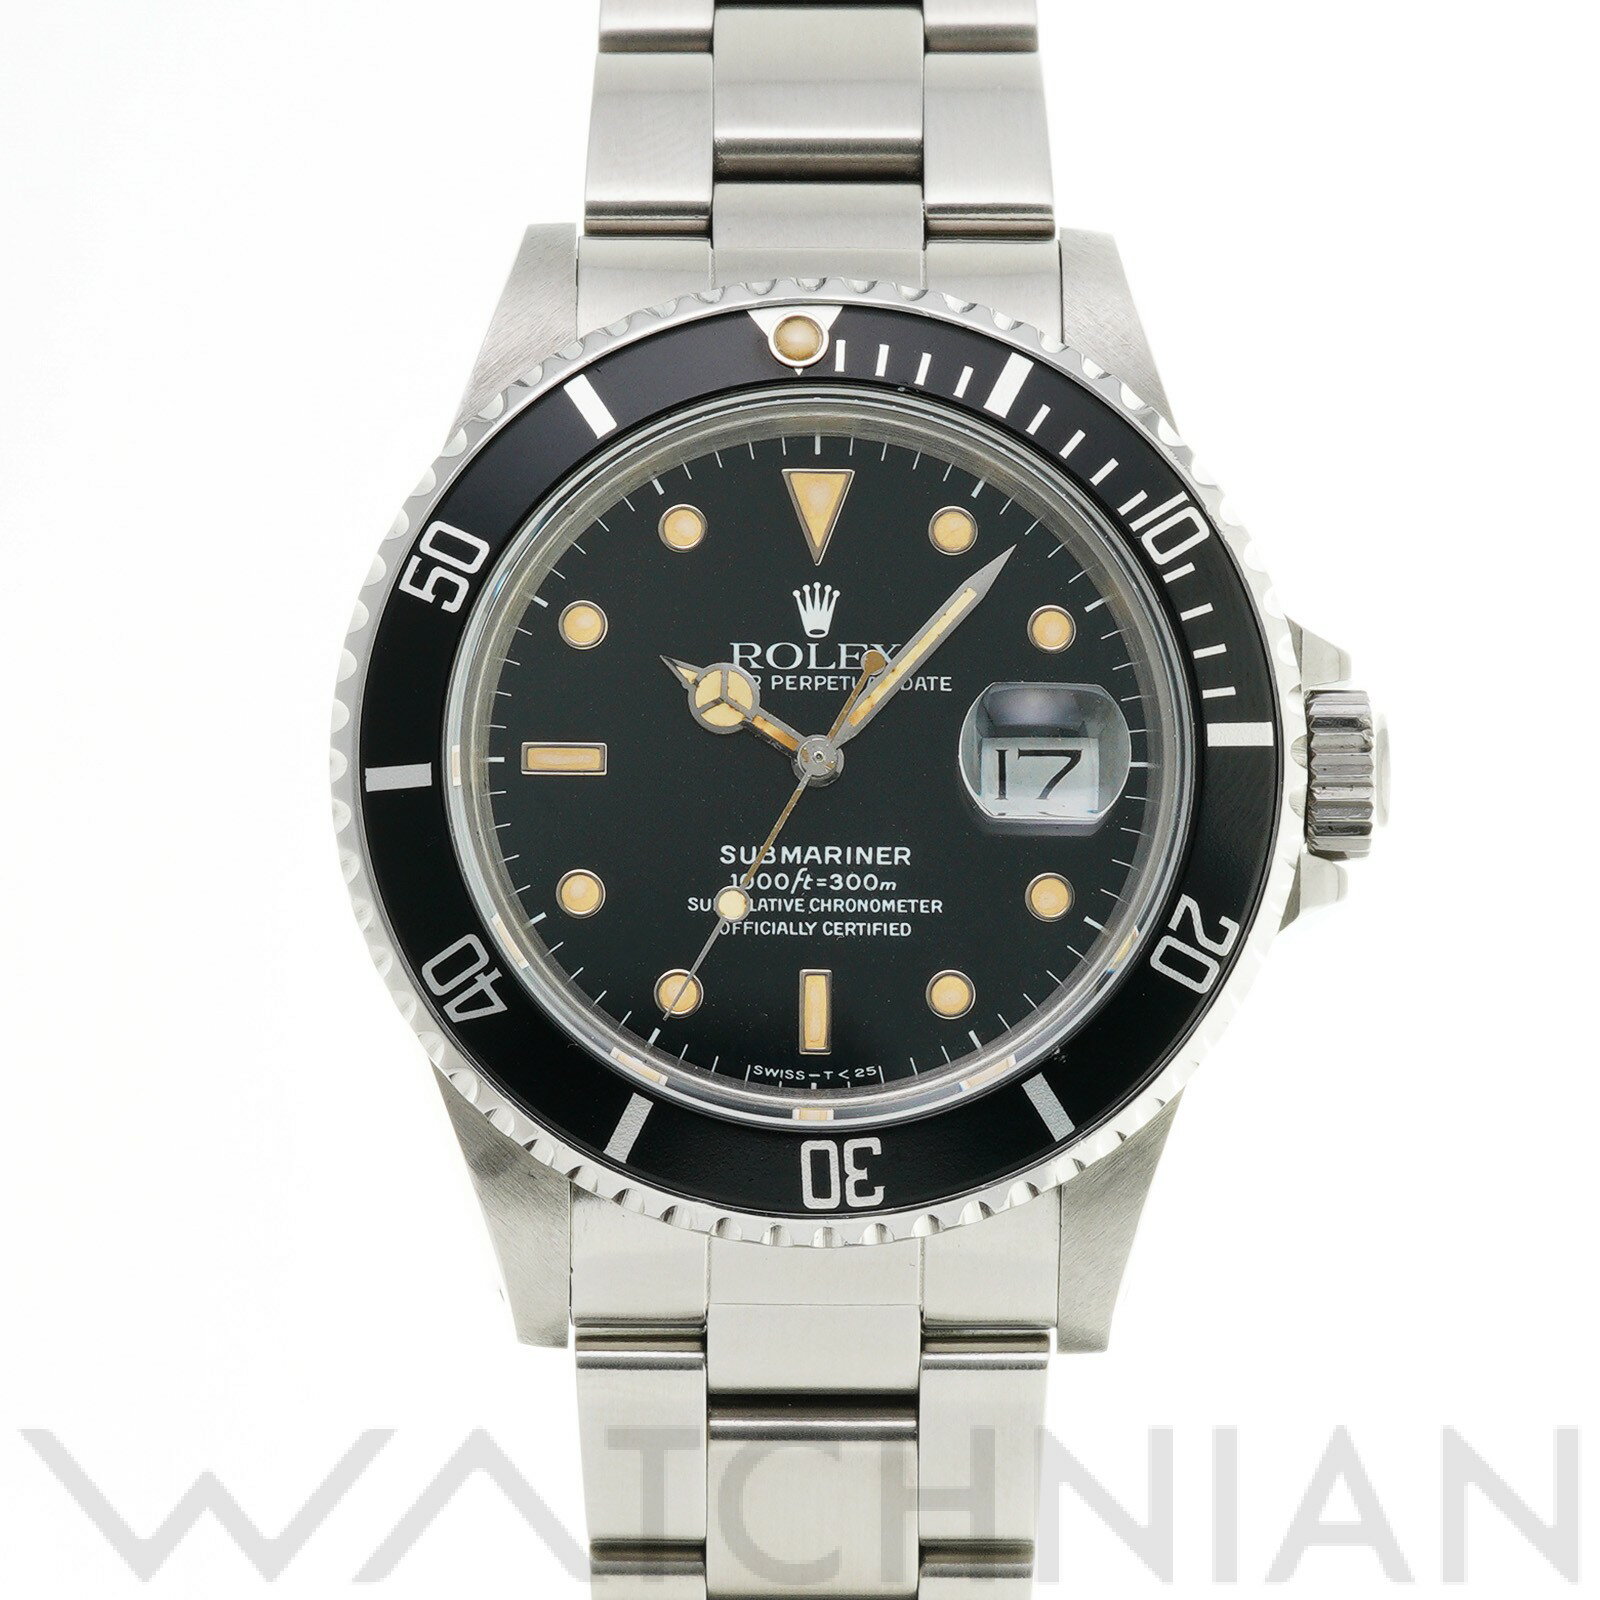 【中古】 ロレックス ROLEX サブマリーナ デイト 16800 91番台(1985年頃製造) ブラック メンズ 腕時計